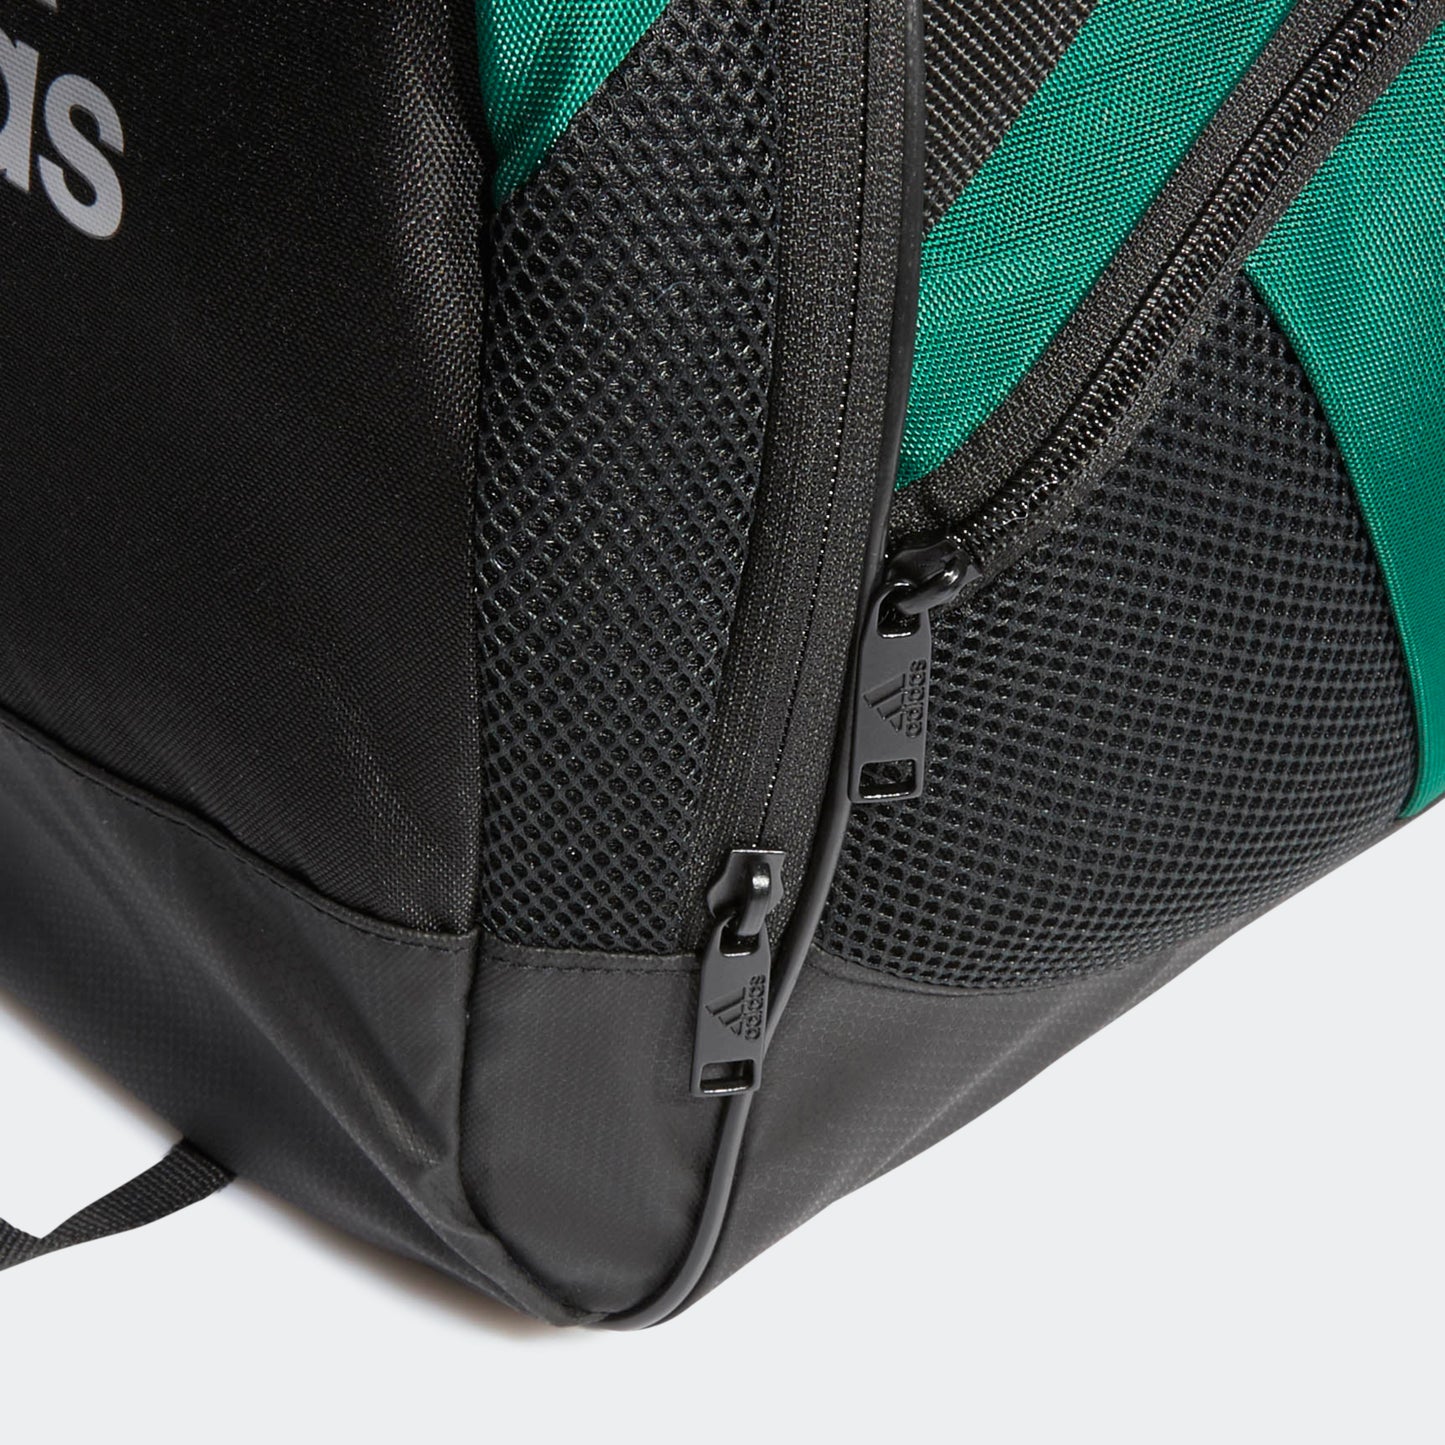 adidas TEAM ISSUE II Medium Duffel Bag | Green